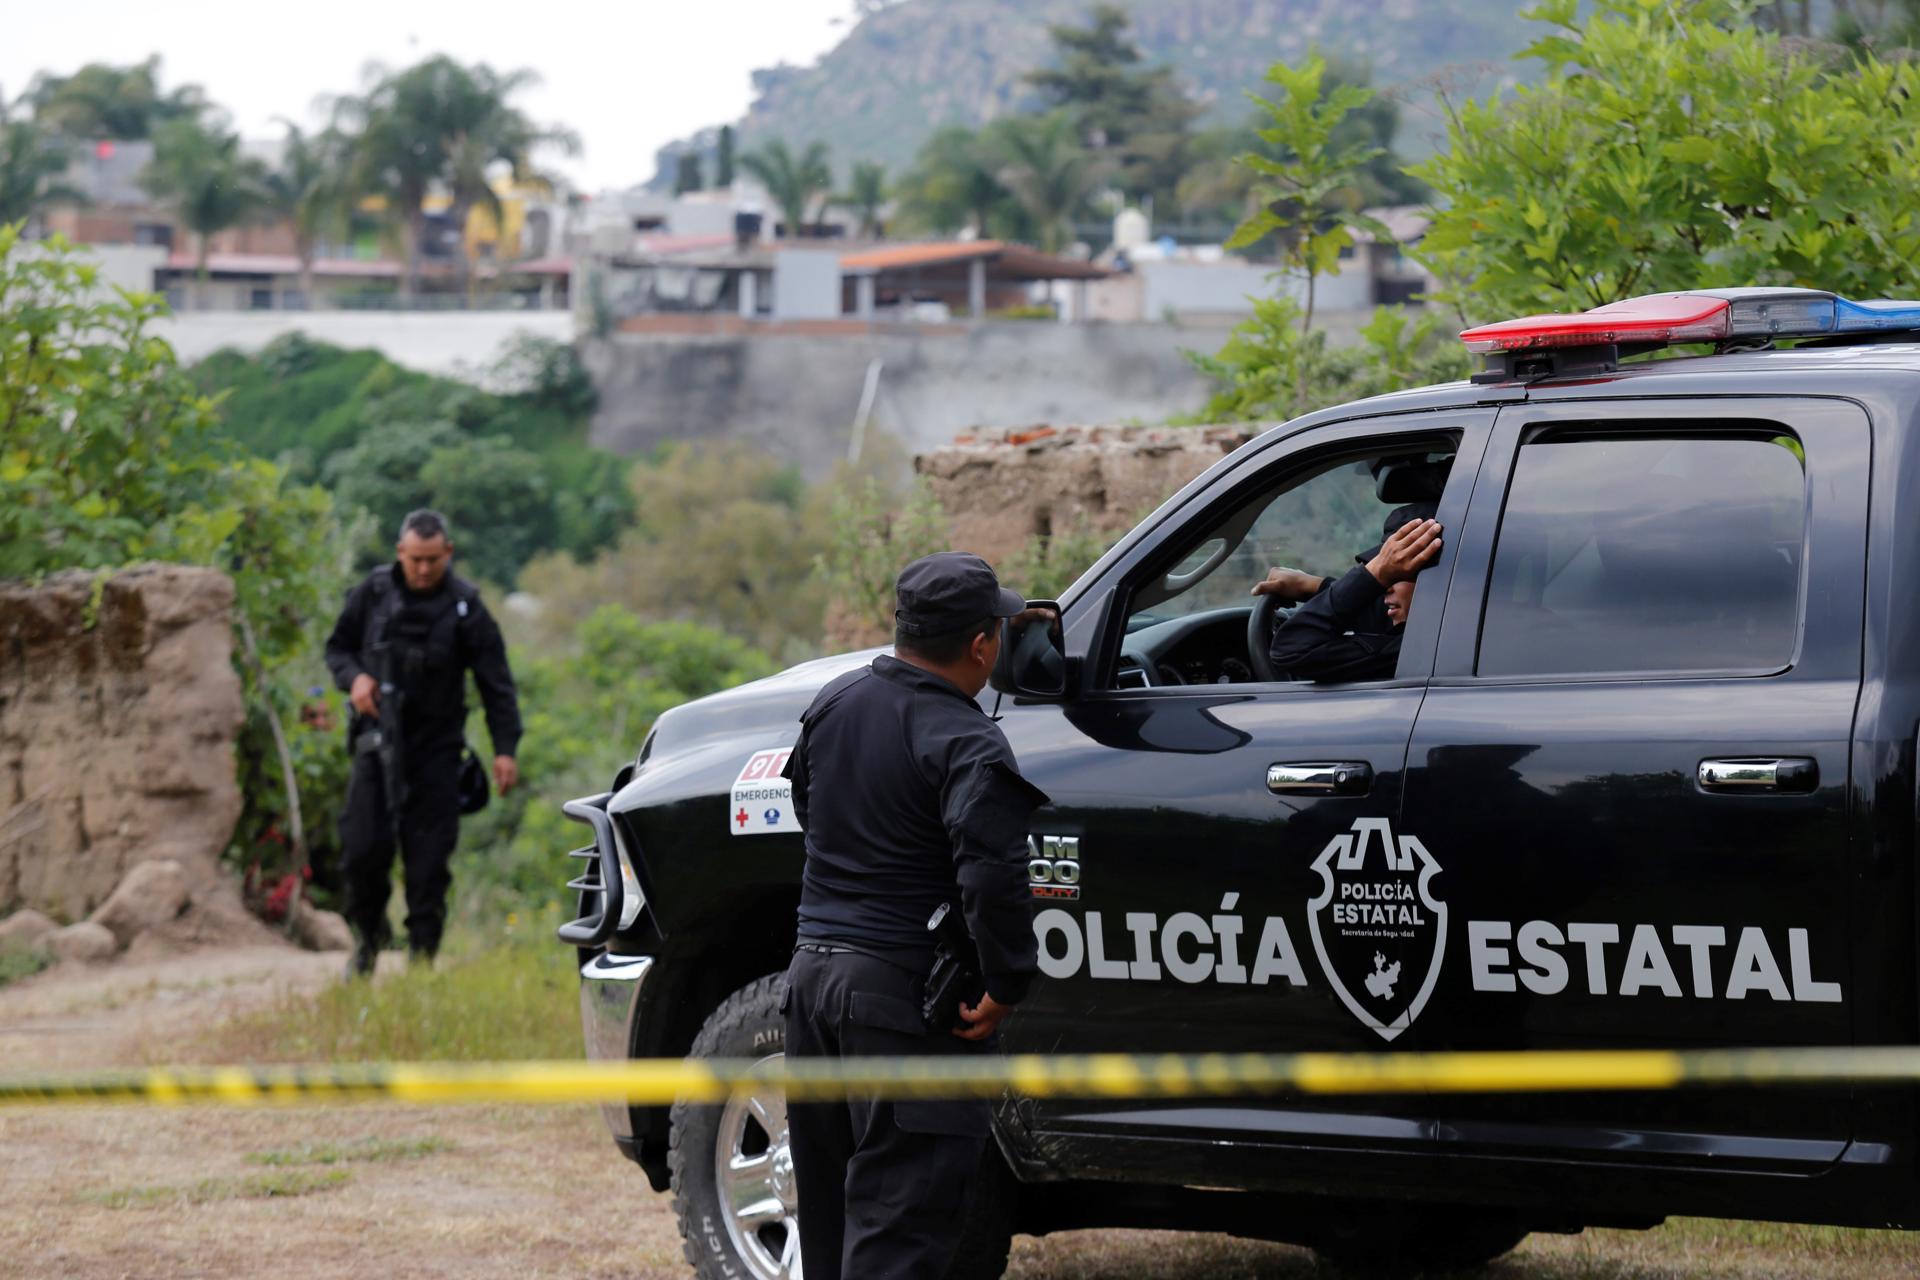 Fotografía de archivo que muestra a policías estatales resguardando el sitio donde se presentó un tiroteo en el municipio de Zapopan, estado de Jalisco (México). EFE/Francisco Guasco